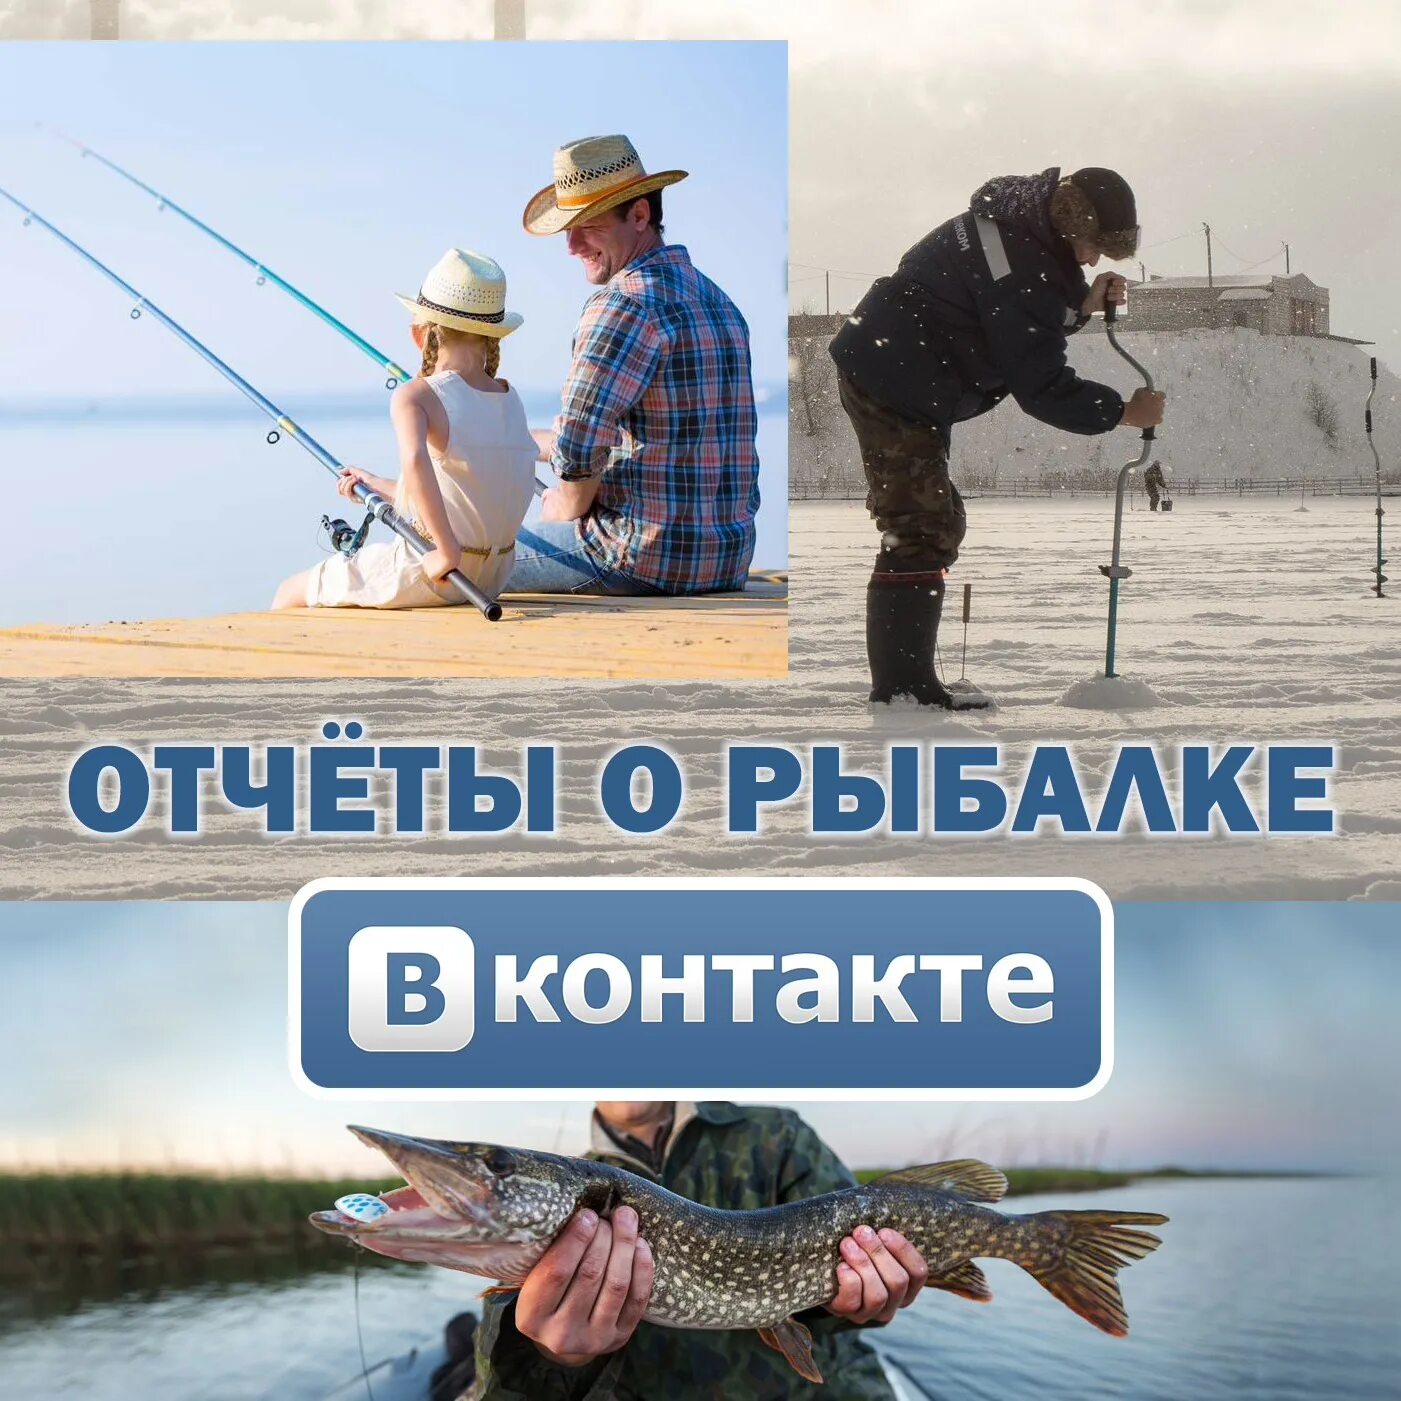 Сайт рыбаков в контакте. Отчеты о рыбалке. Отчеты по рыбалке. Рыболовные войска Тольятти. Рыбалка ВК.